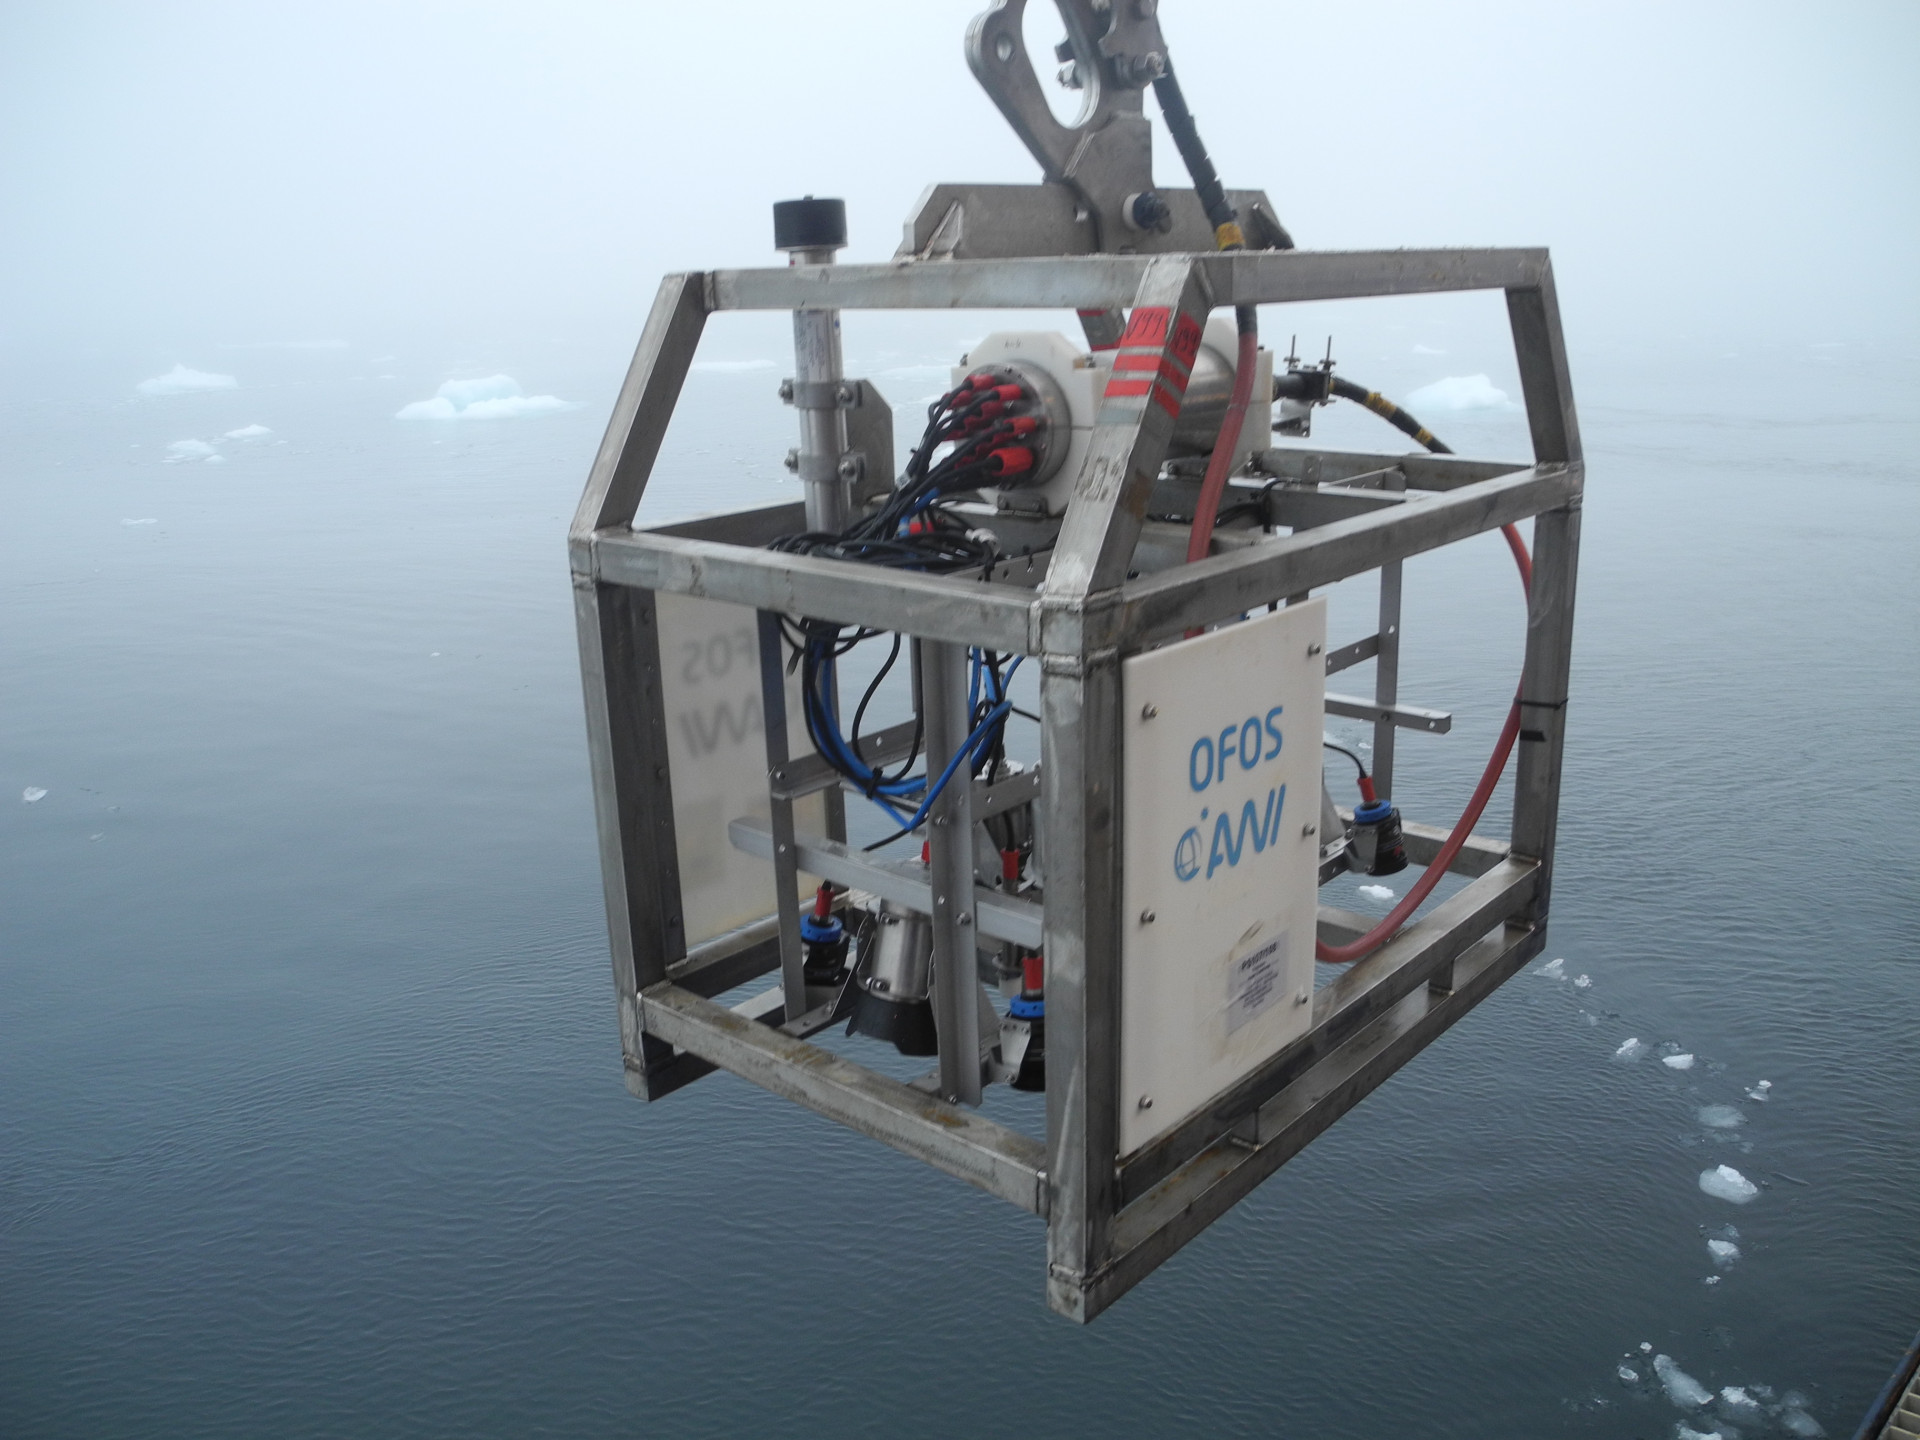 Wissenschaftliches Gerät in einem Metallkäfig schwebt über dem Wasser, auf dem kleine Eisschollen treiben